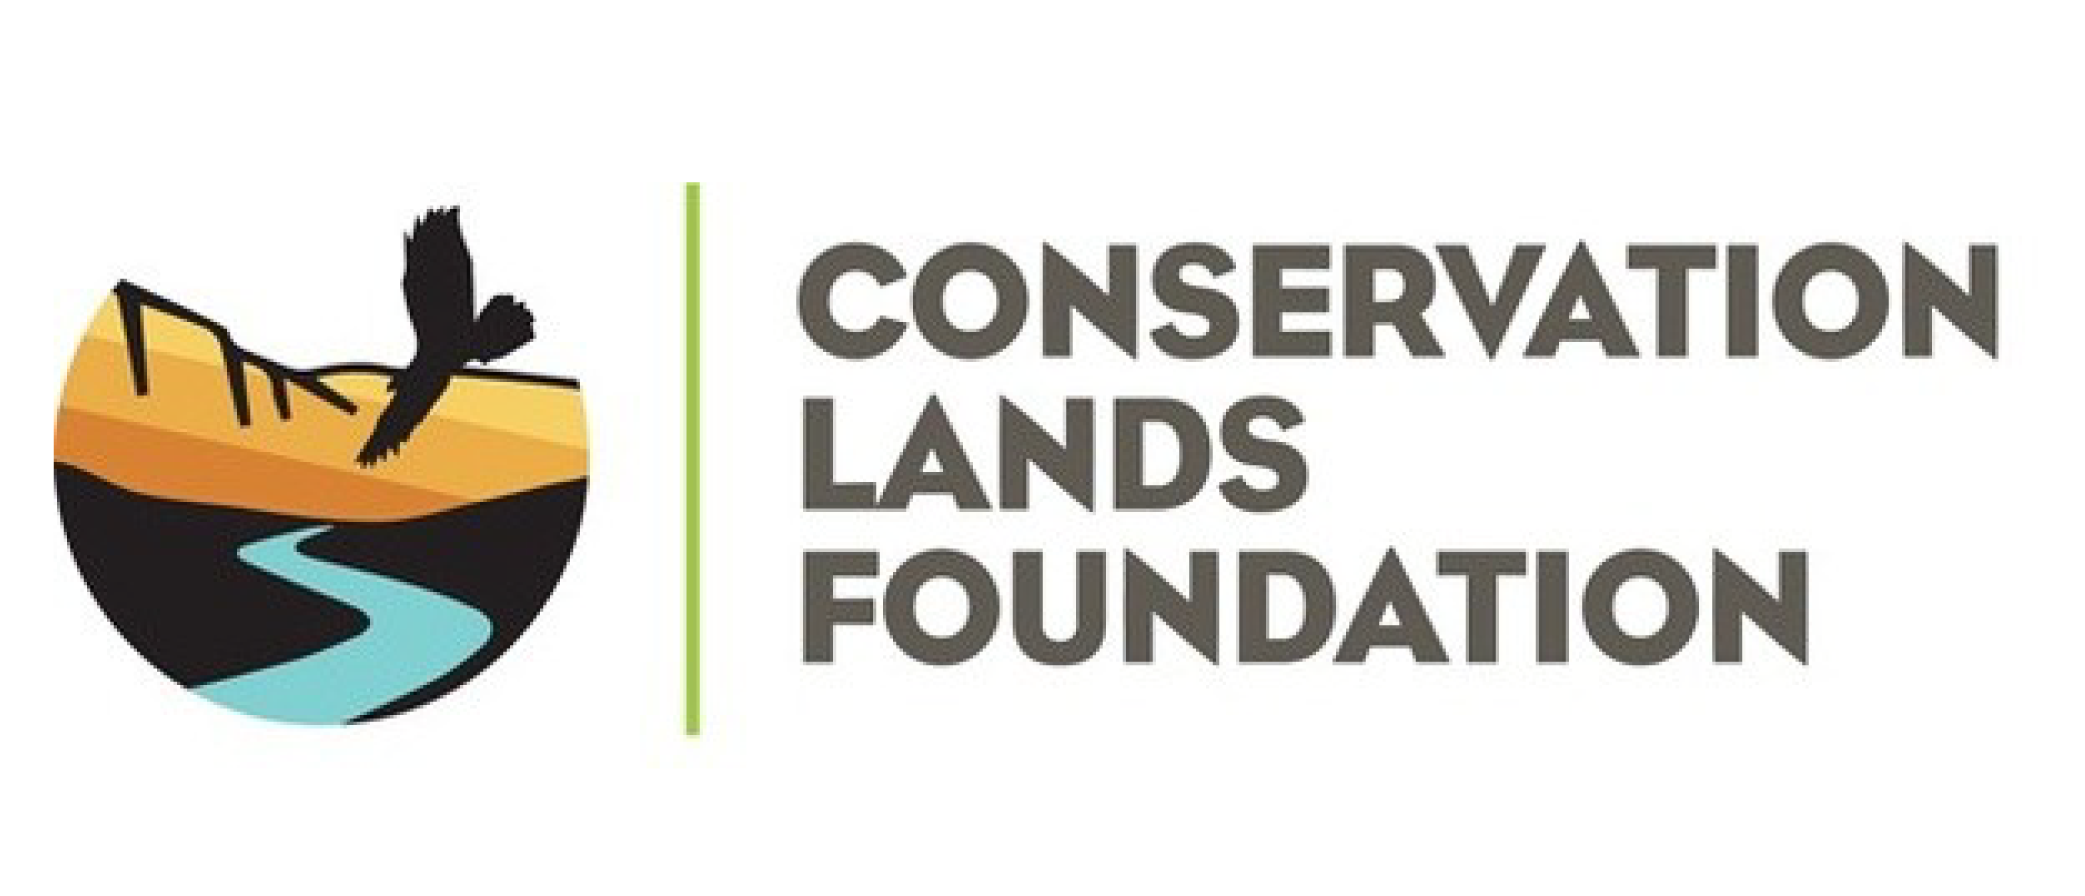 Conservation Lands Foundation